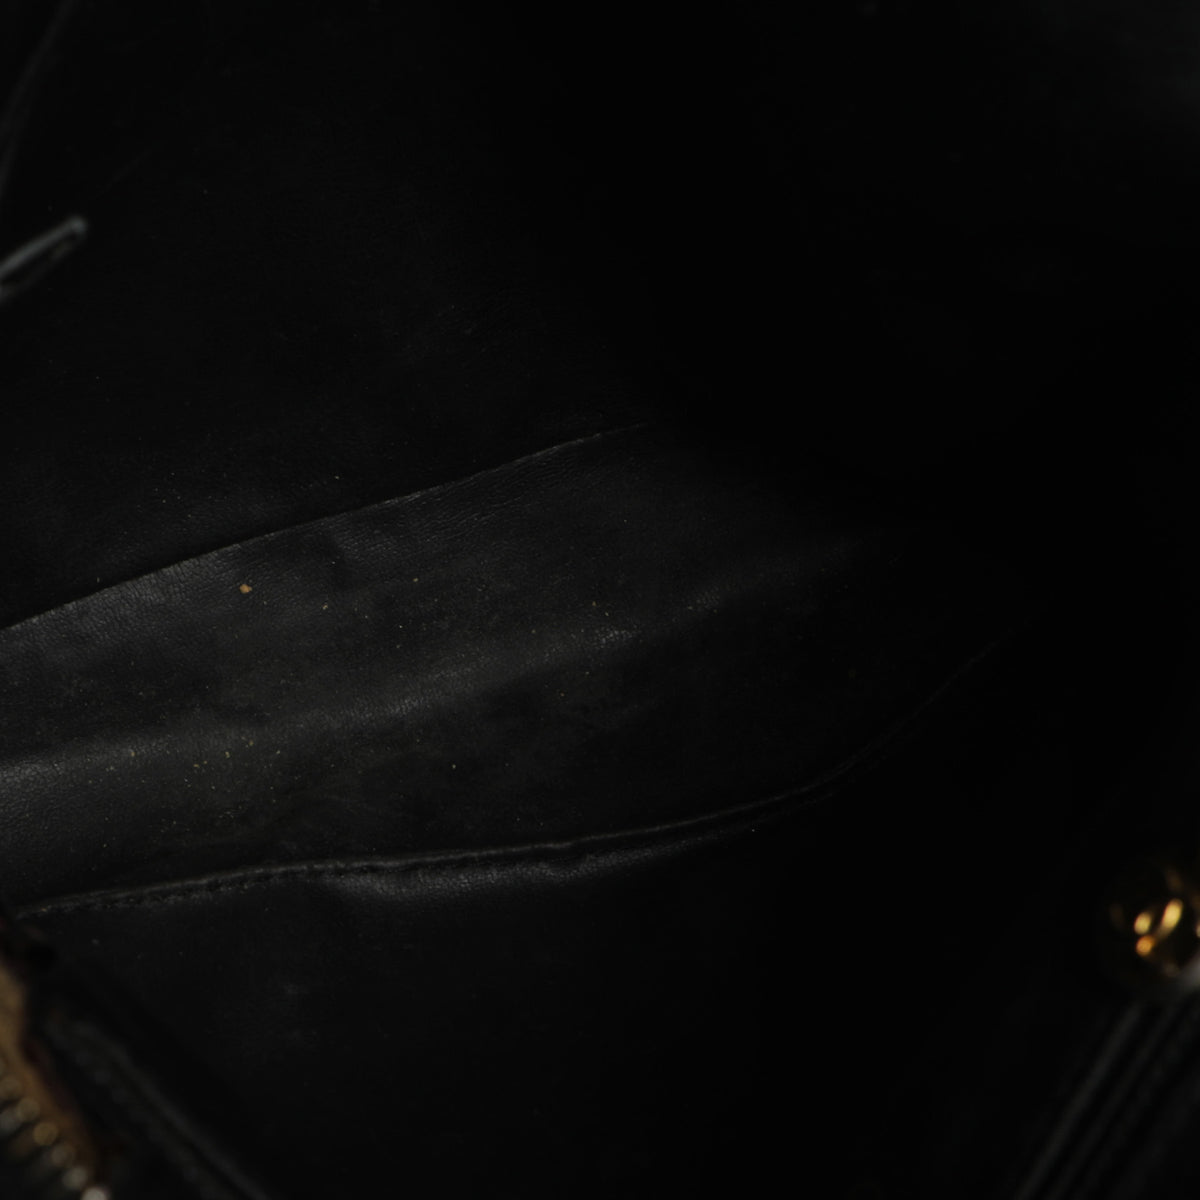 Vintage 80s Chanel Lambskin Leather Quilted Black Shoulder Hobo Bag